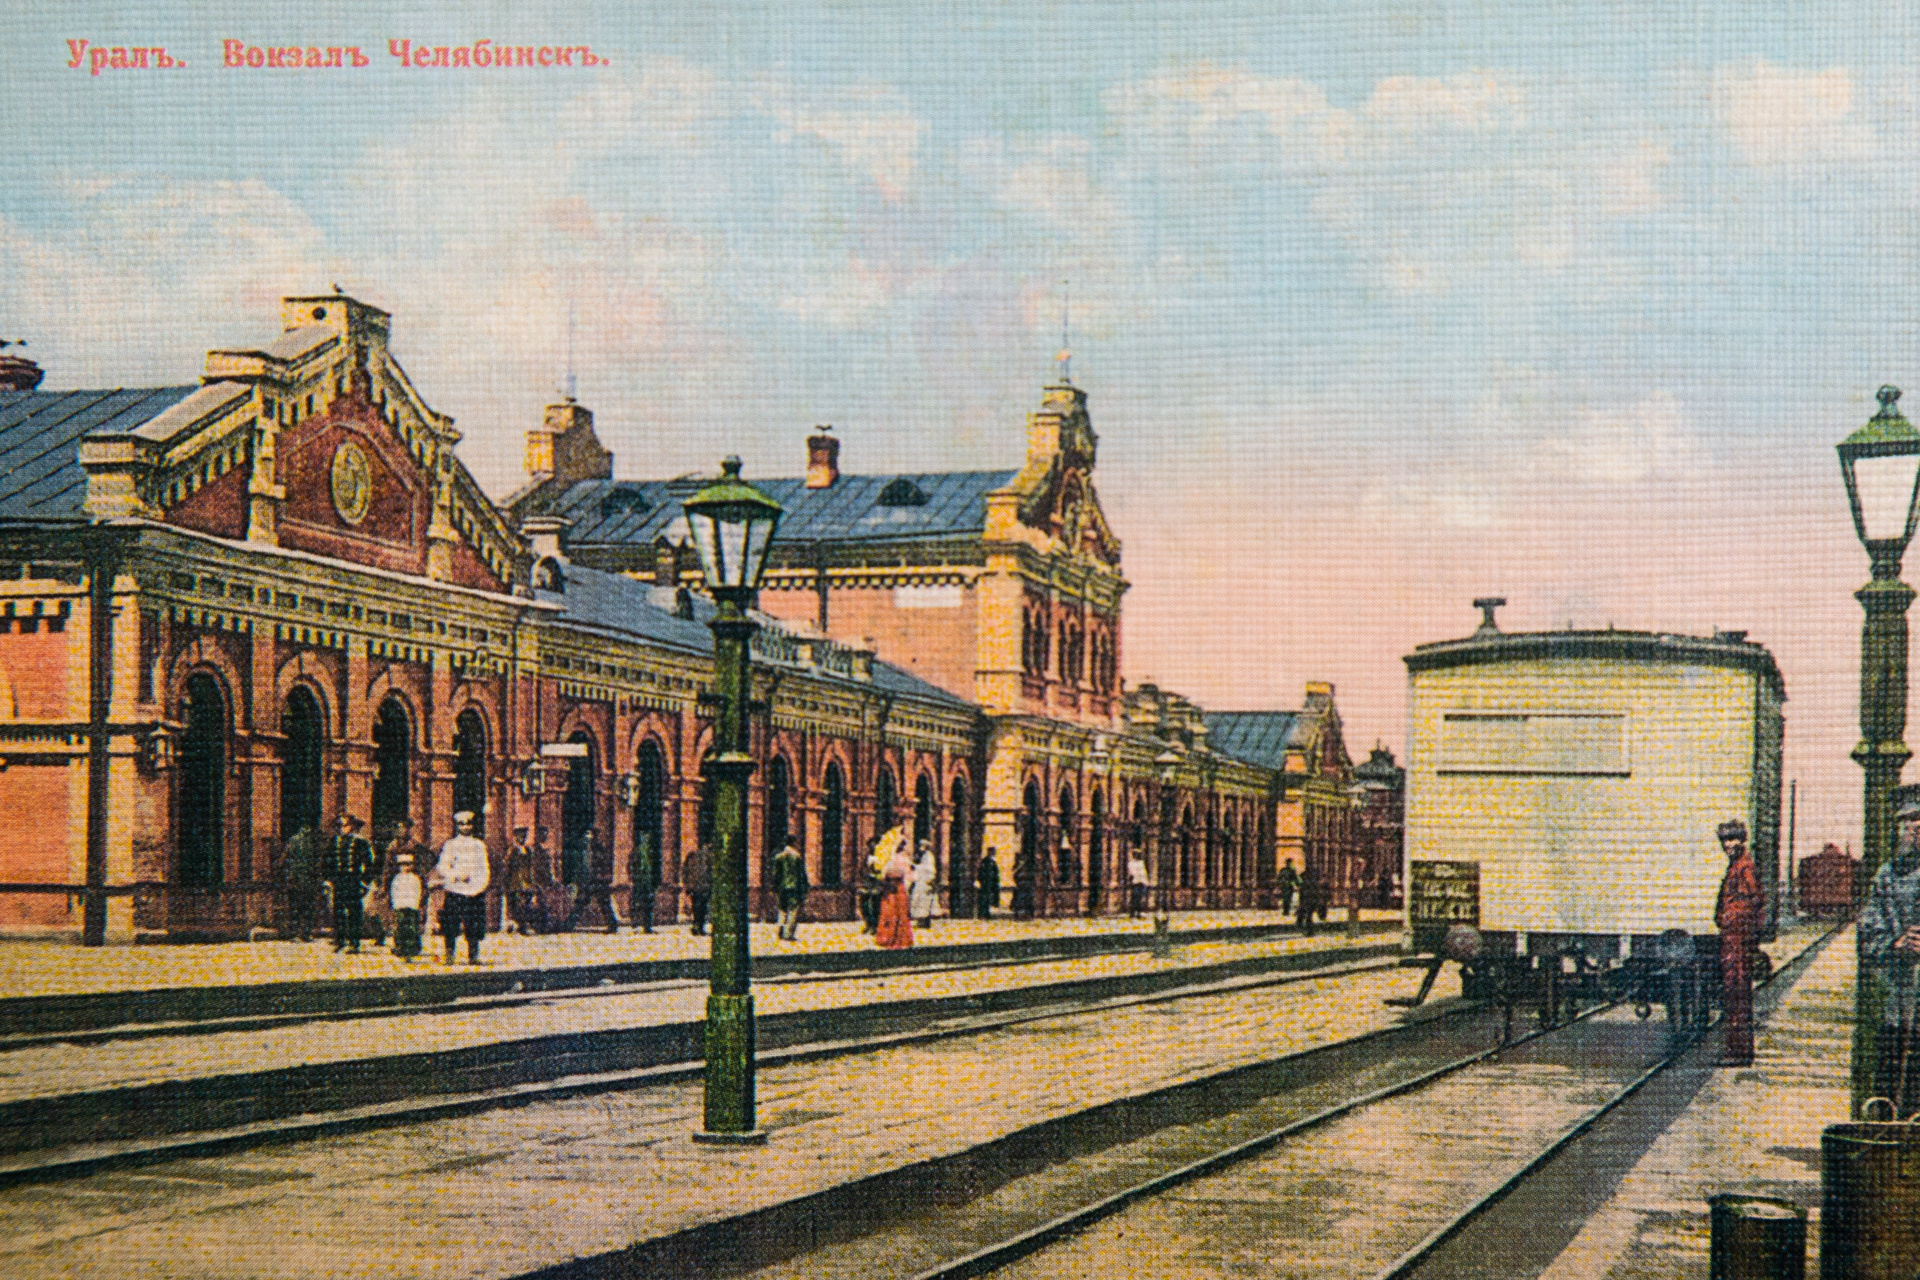 железнодорожный вокзал в челябинске